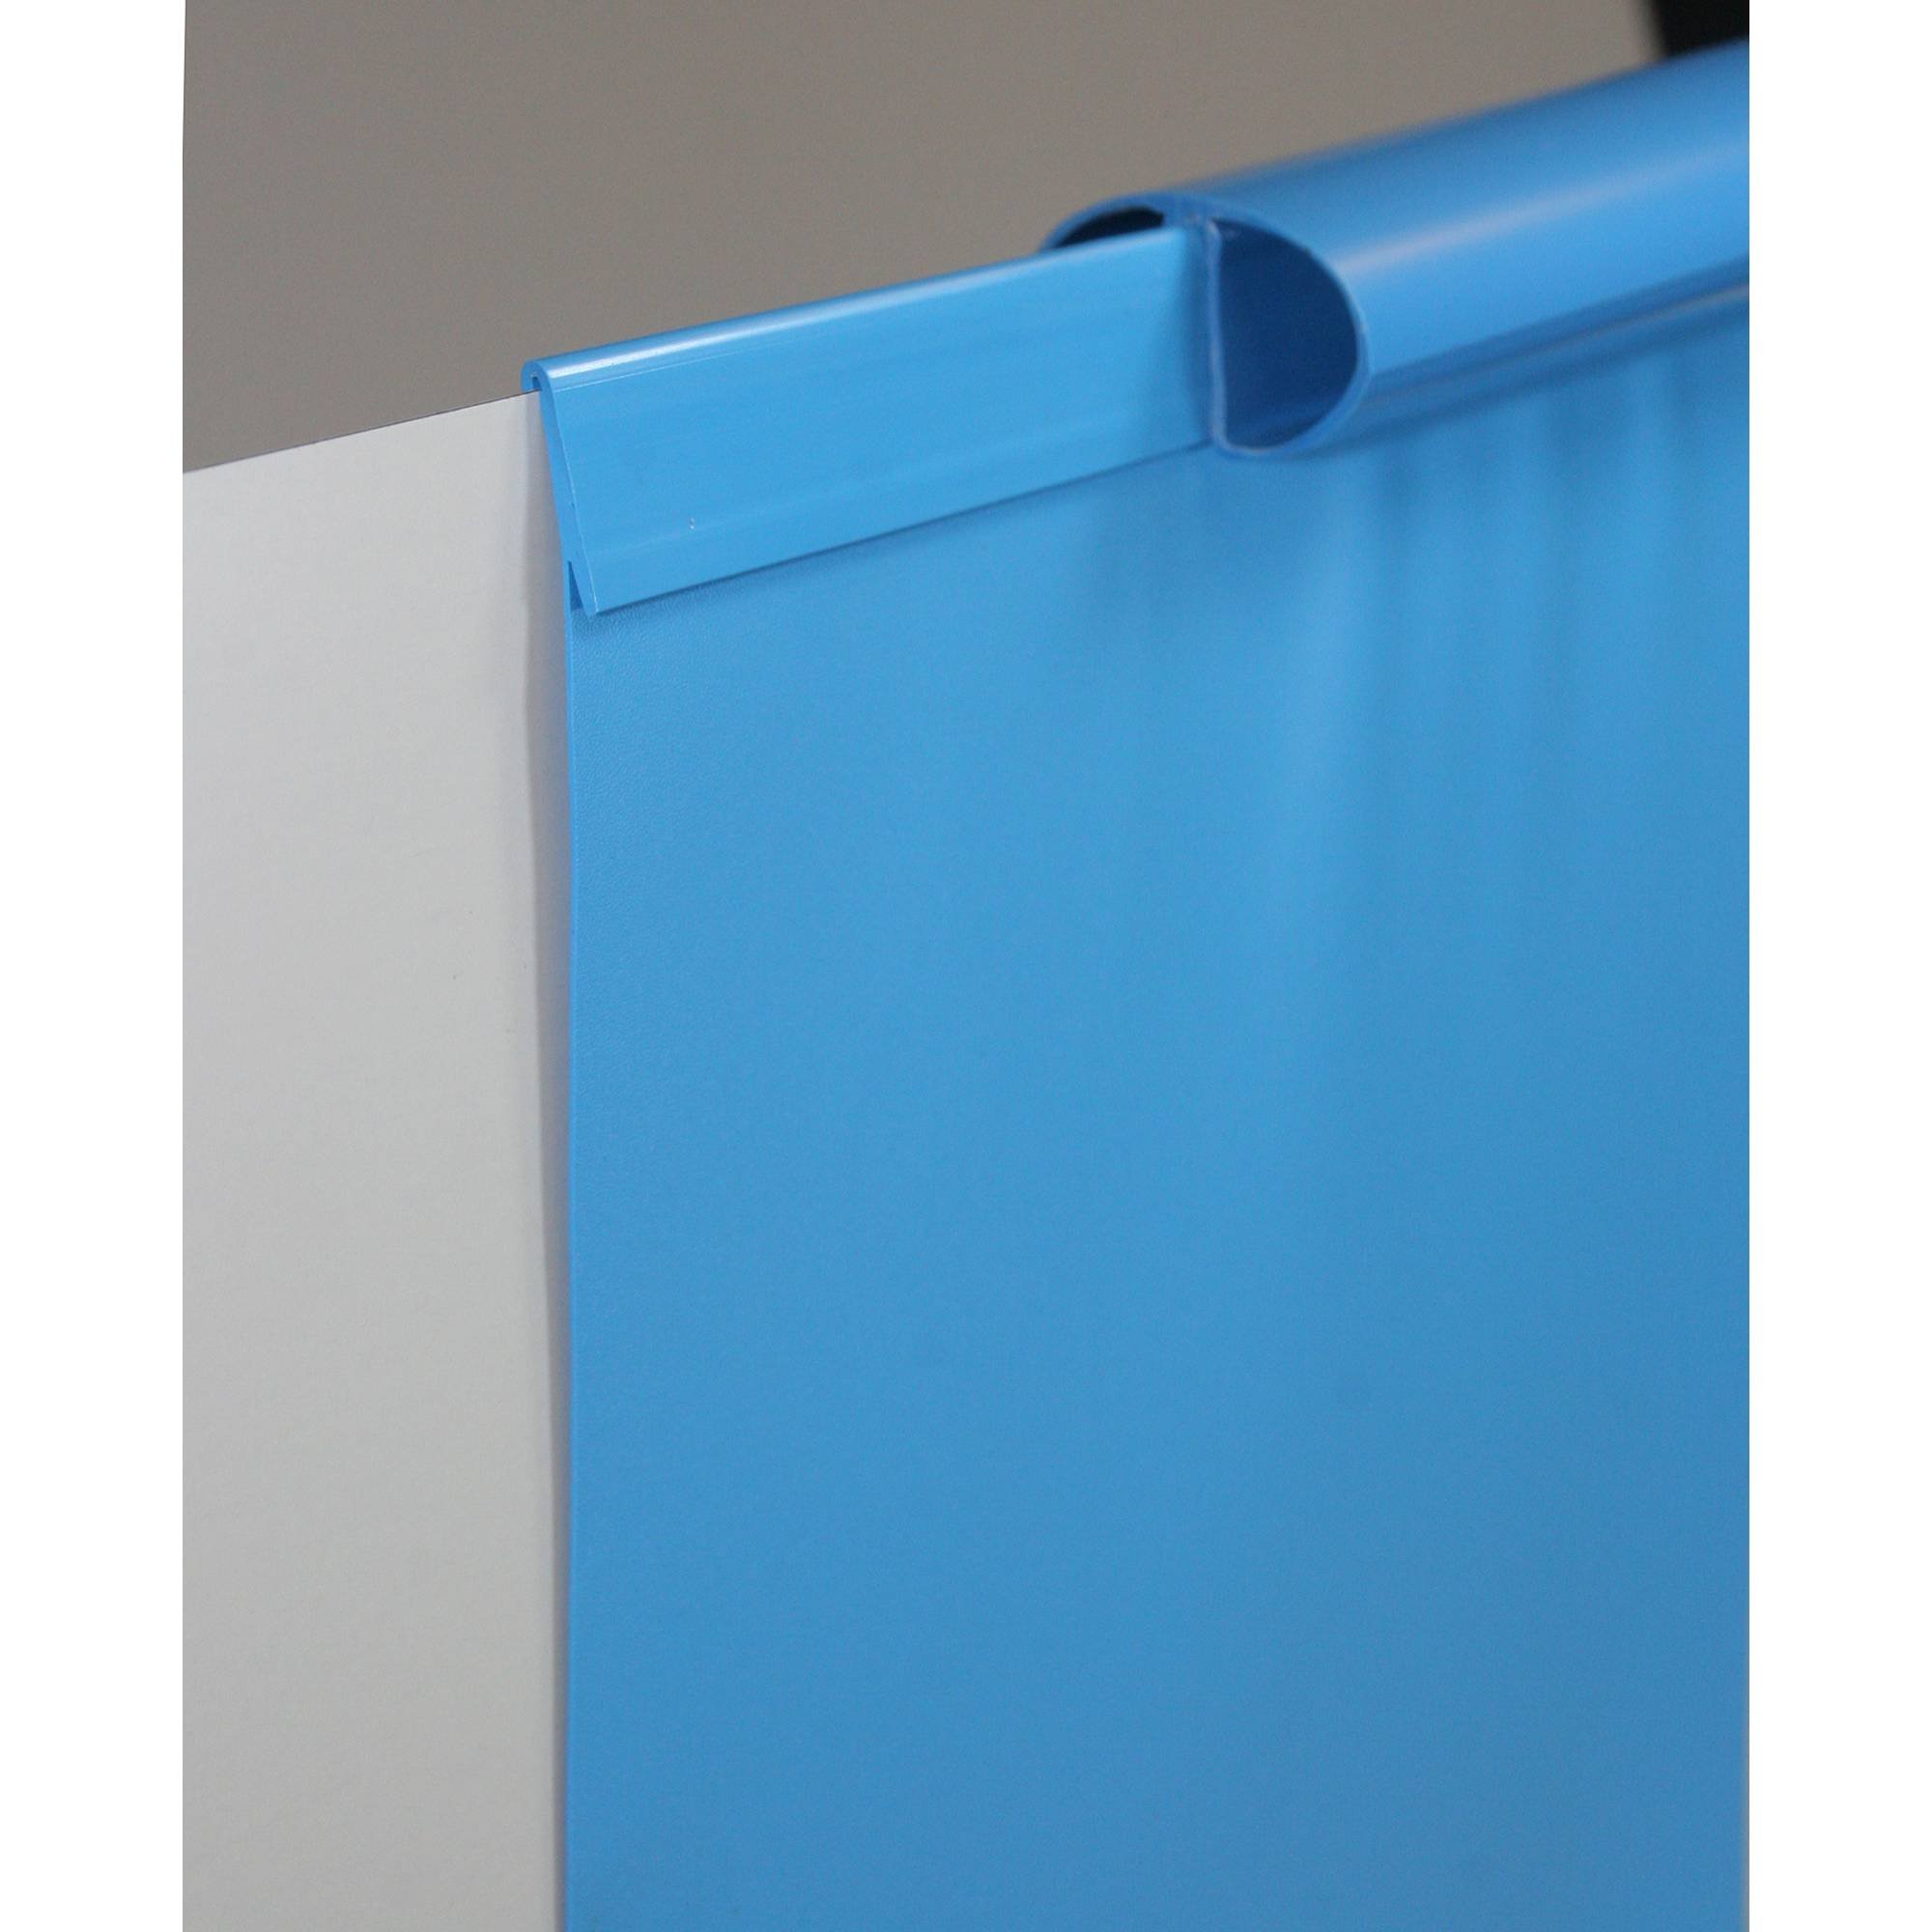 Poolfolie Ersatzfolie Rundbecken 550x120cm - Dicke 0,4mm - Einhängebiese - blau